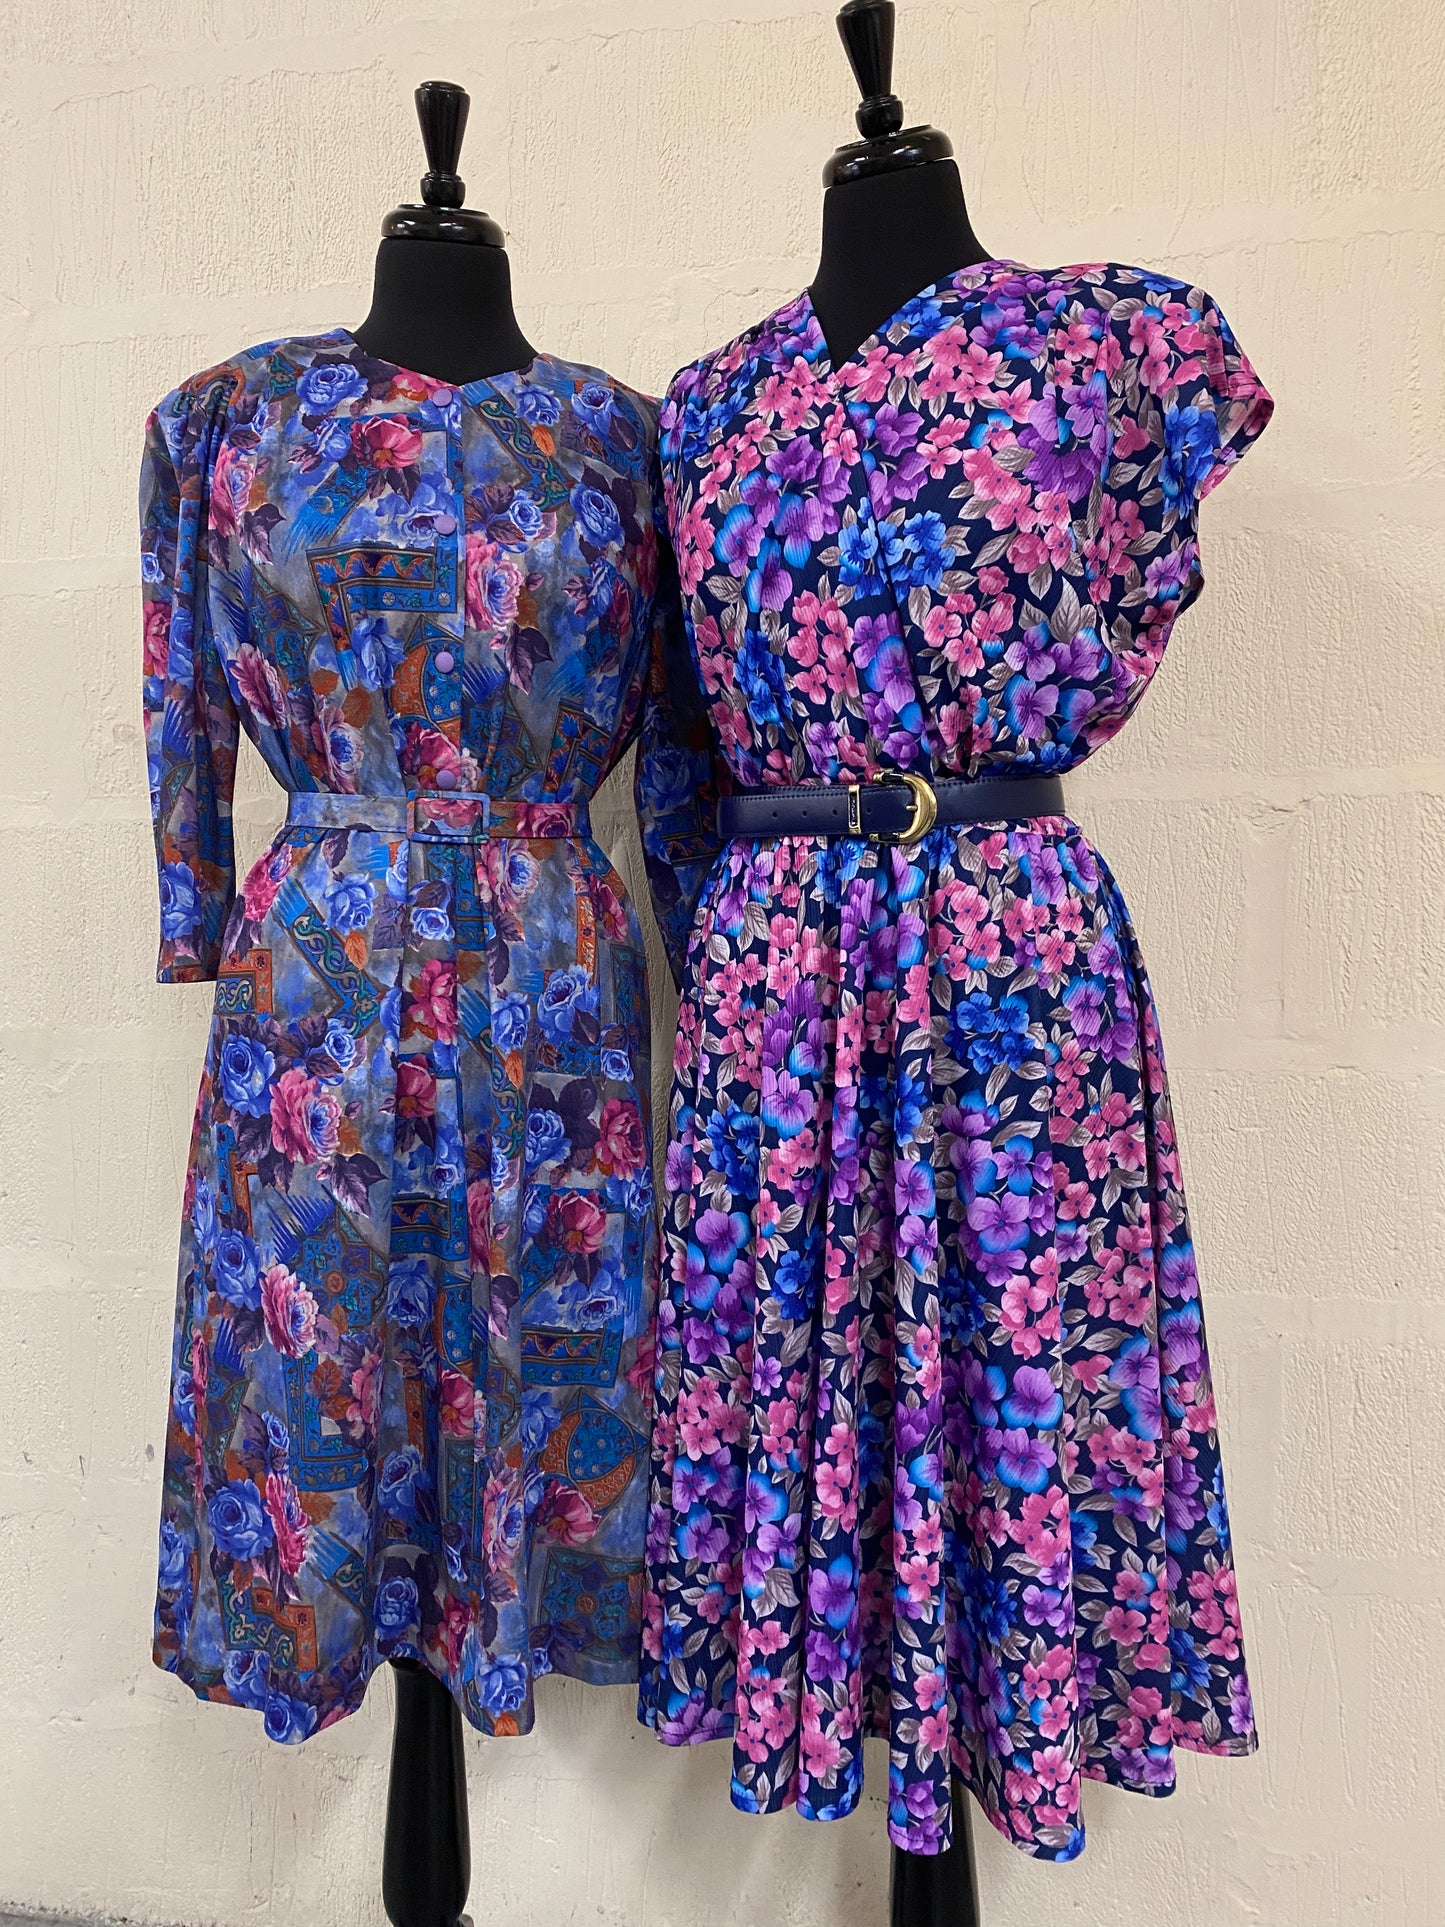 Vintage Handmade Blue & Pink Floral Dress Size 18-20